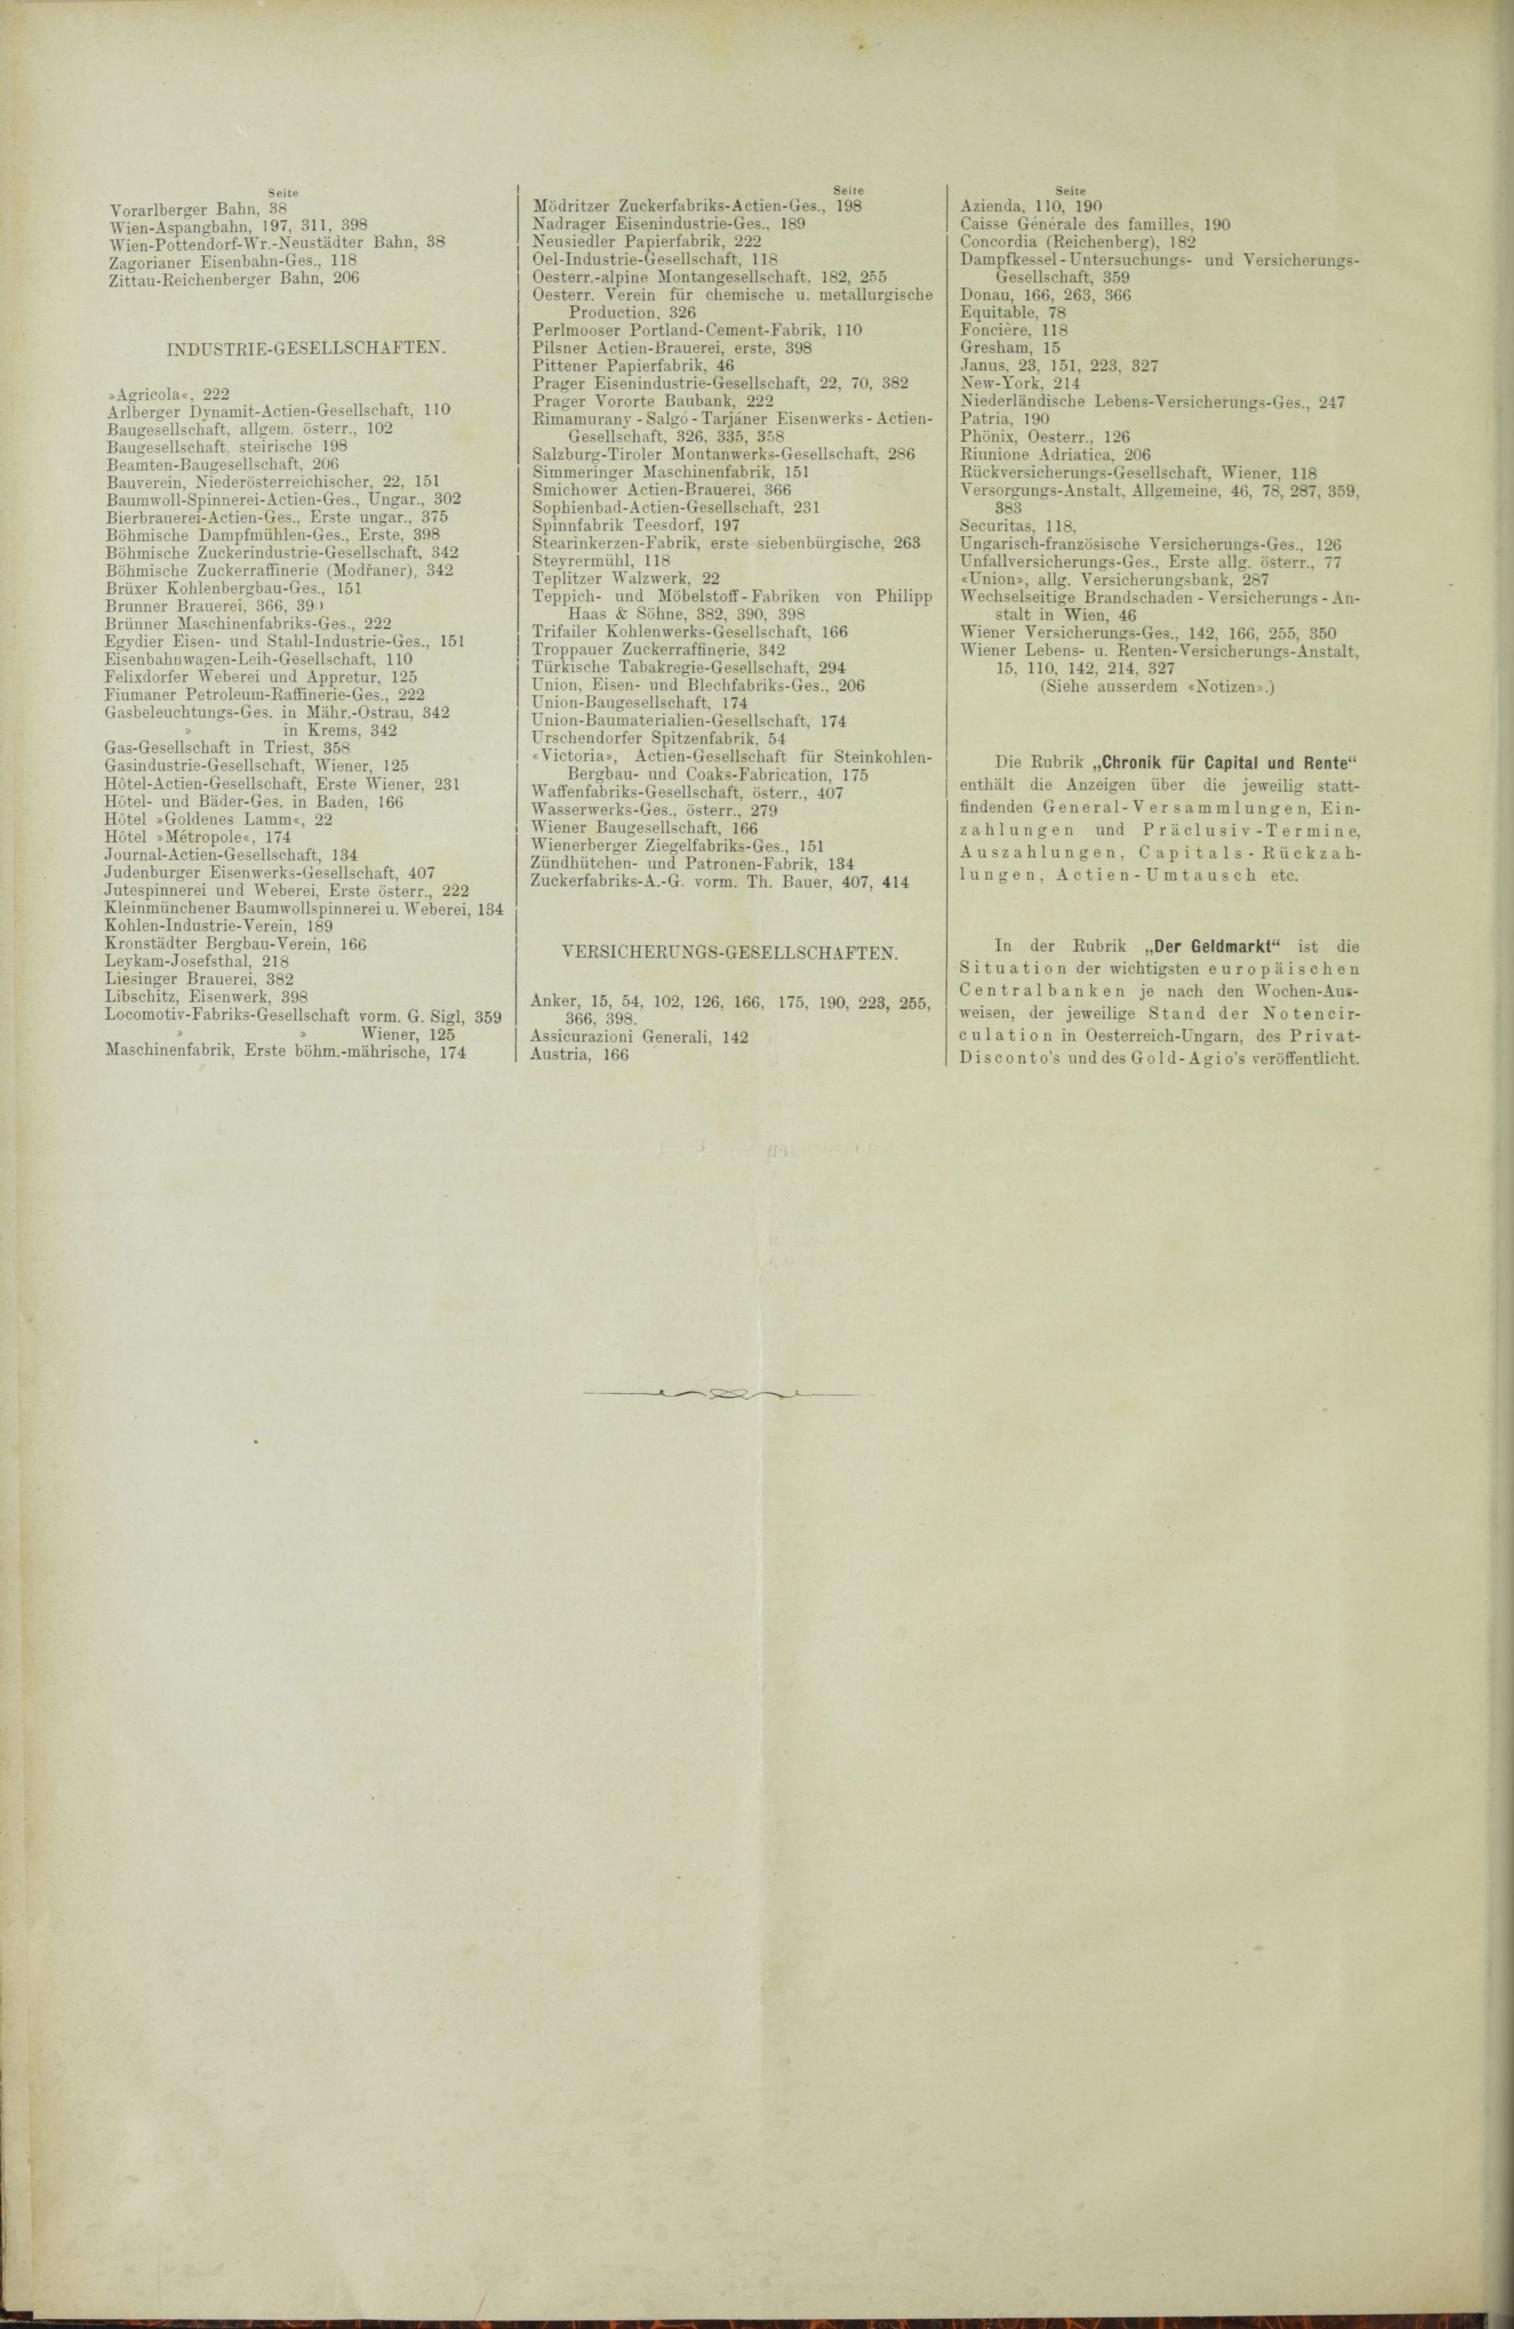 Der Tresor 03.06.1886 - Seite 12